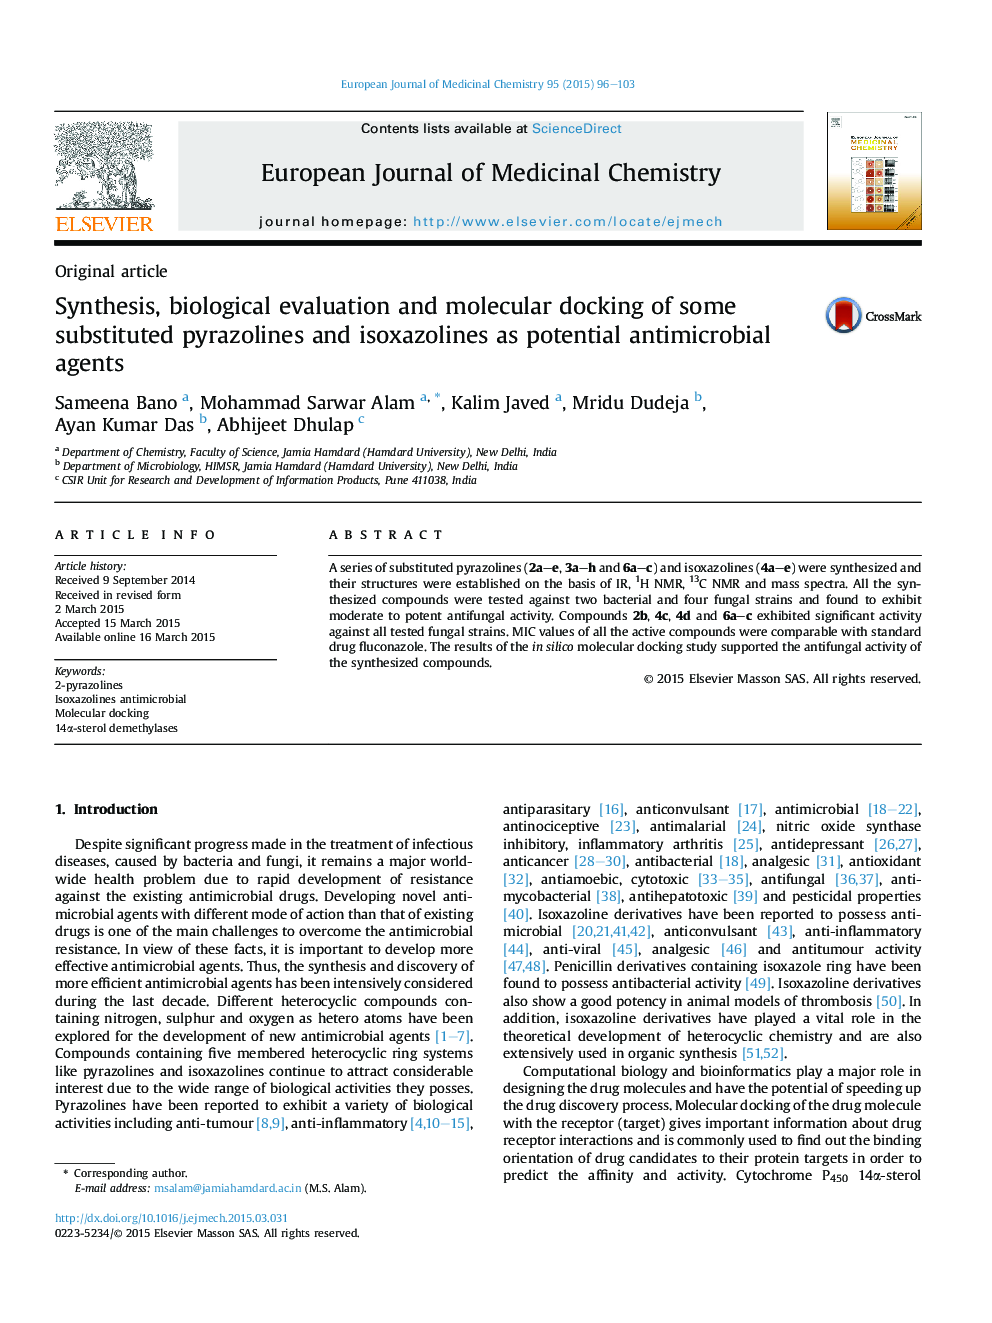 سنتز، ارزیابی بیولوژیکی و اتصال مولکولی برخی از پریزولین های جایگزین و ایزوکسازولین ها به عنوان عوامل ضد میکروبی بالقوه 